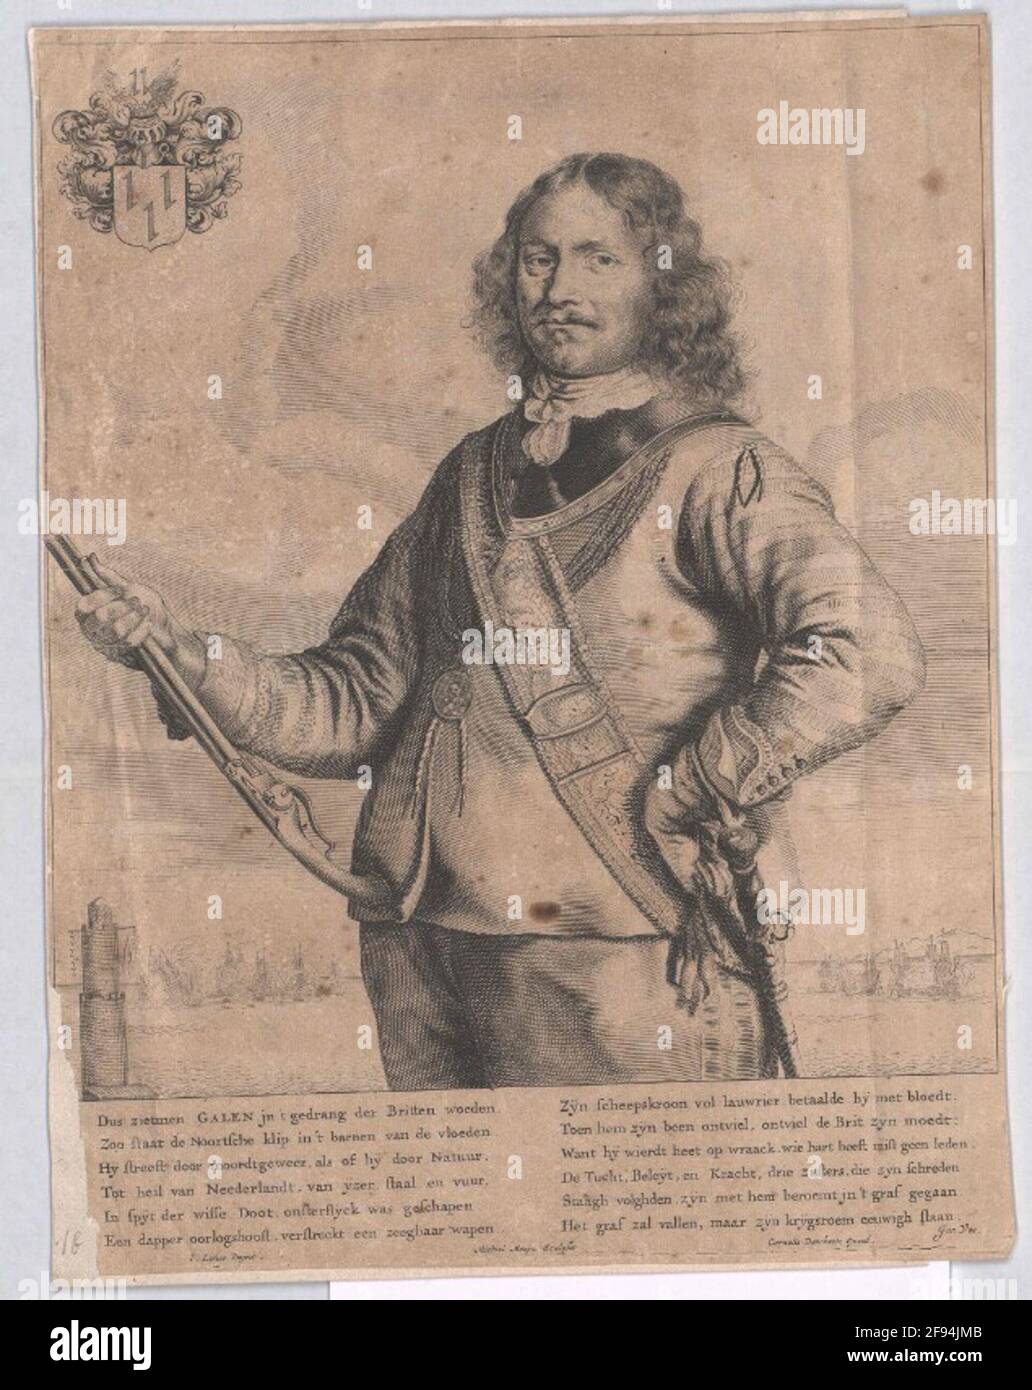 Galen, Jan van Stecher: Mozyn, Michielverleger: Dancerts, Cornelis (2) Citas: 1640/1655 editor: Foto de stock